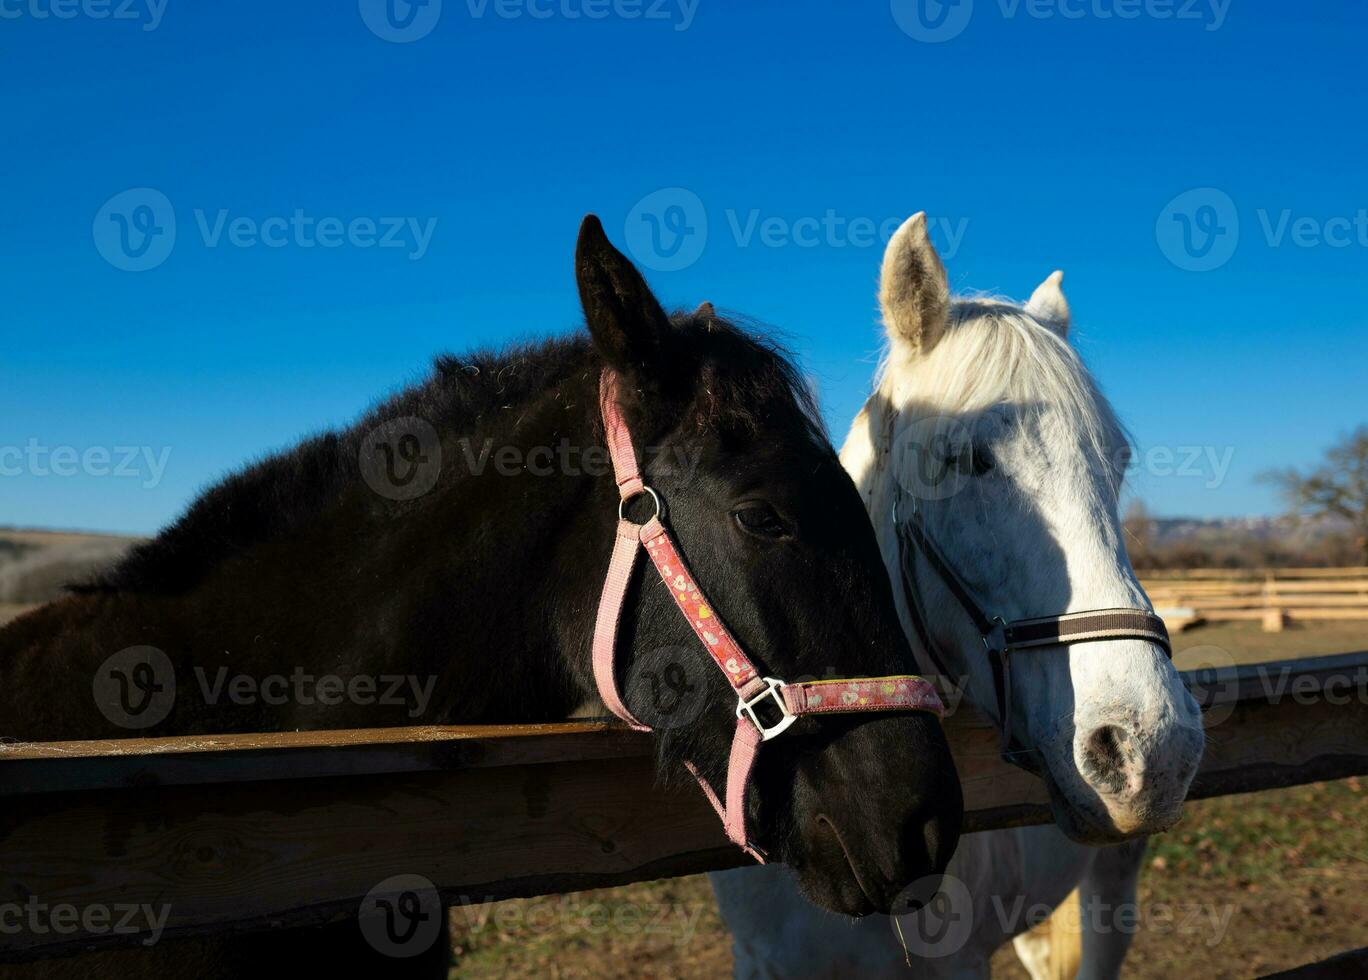 bozales de dos adulto caballos, blanco y marrón, de cerca foto